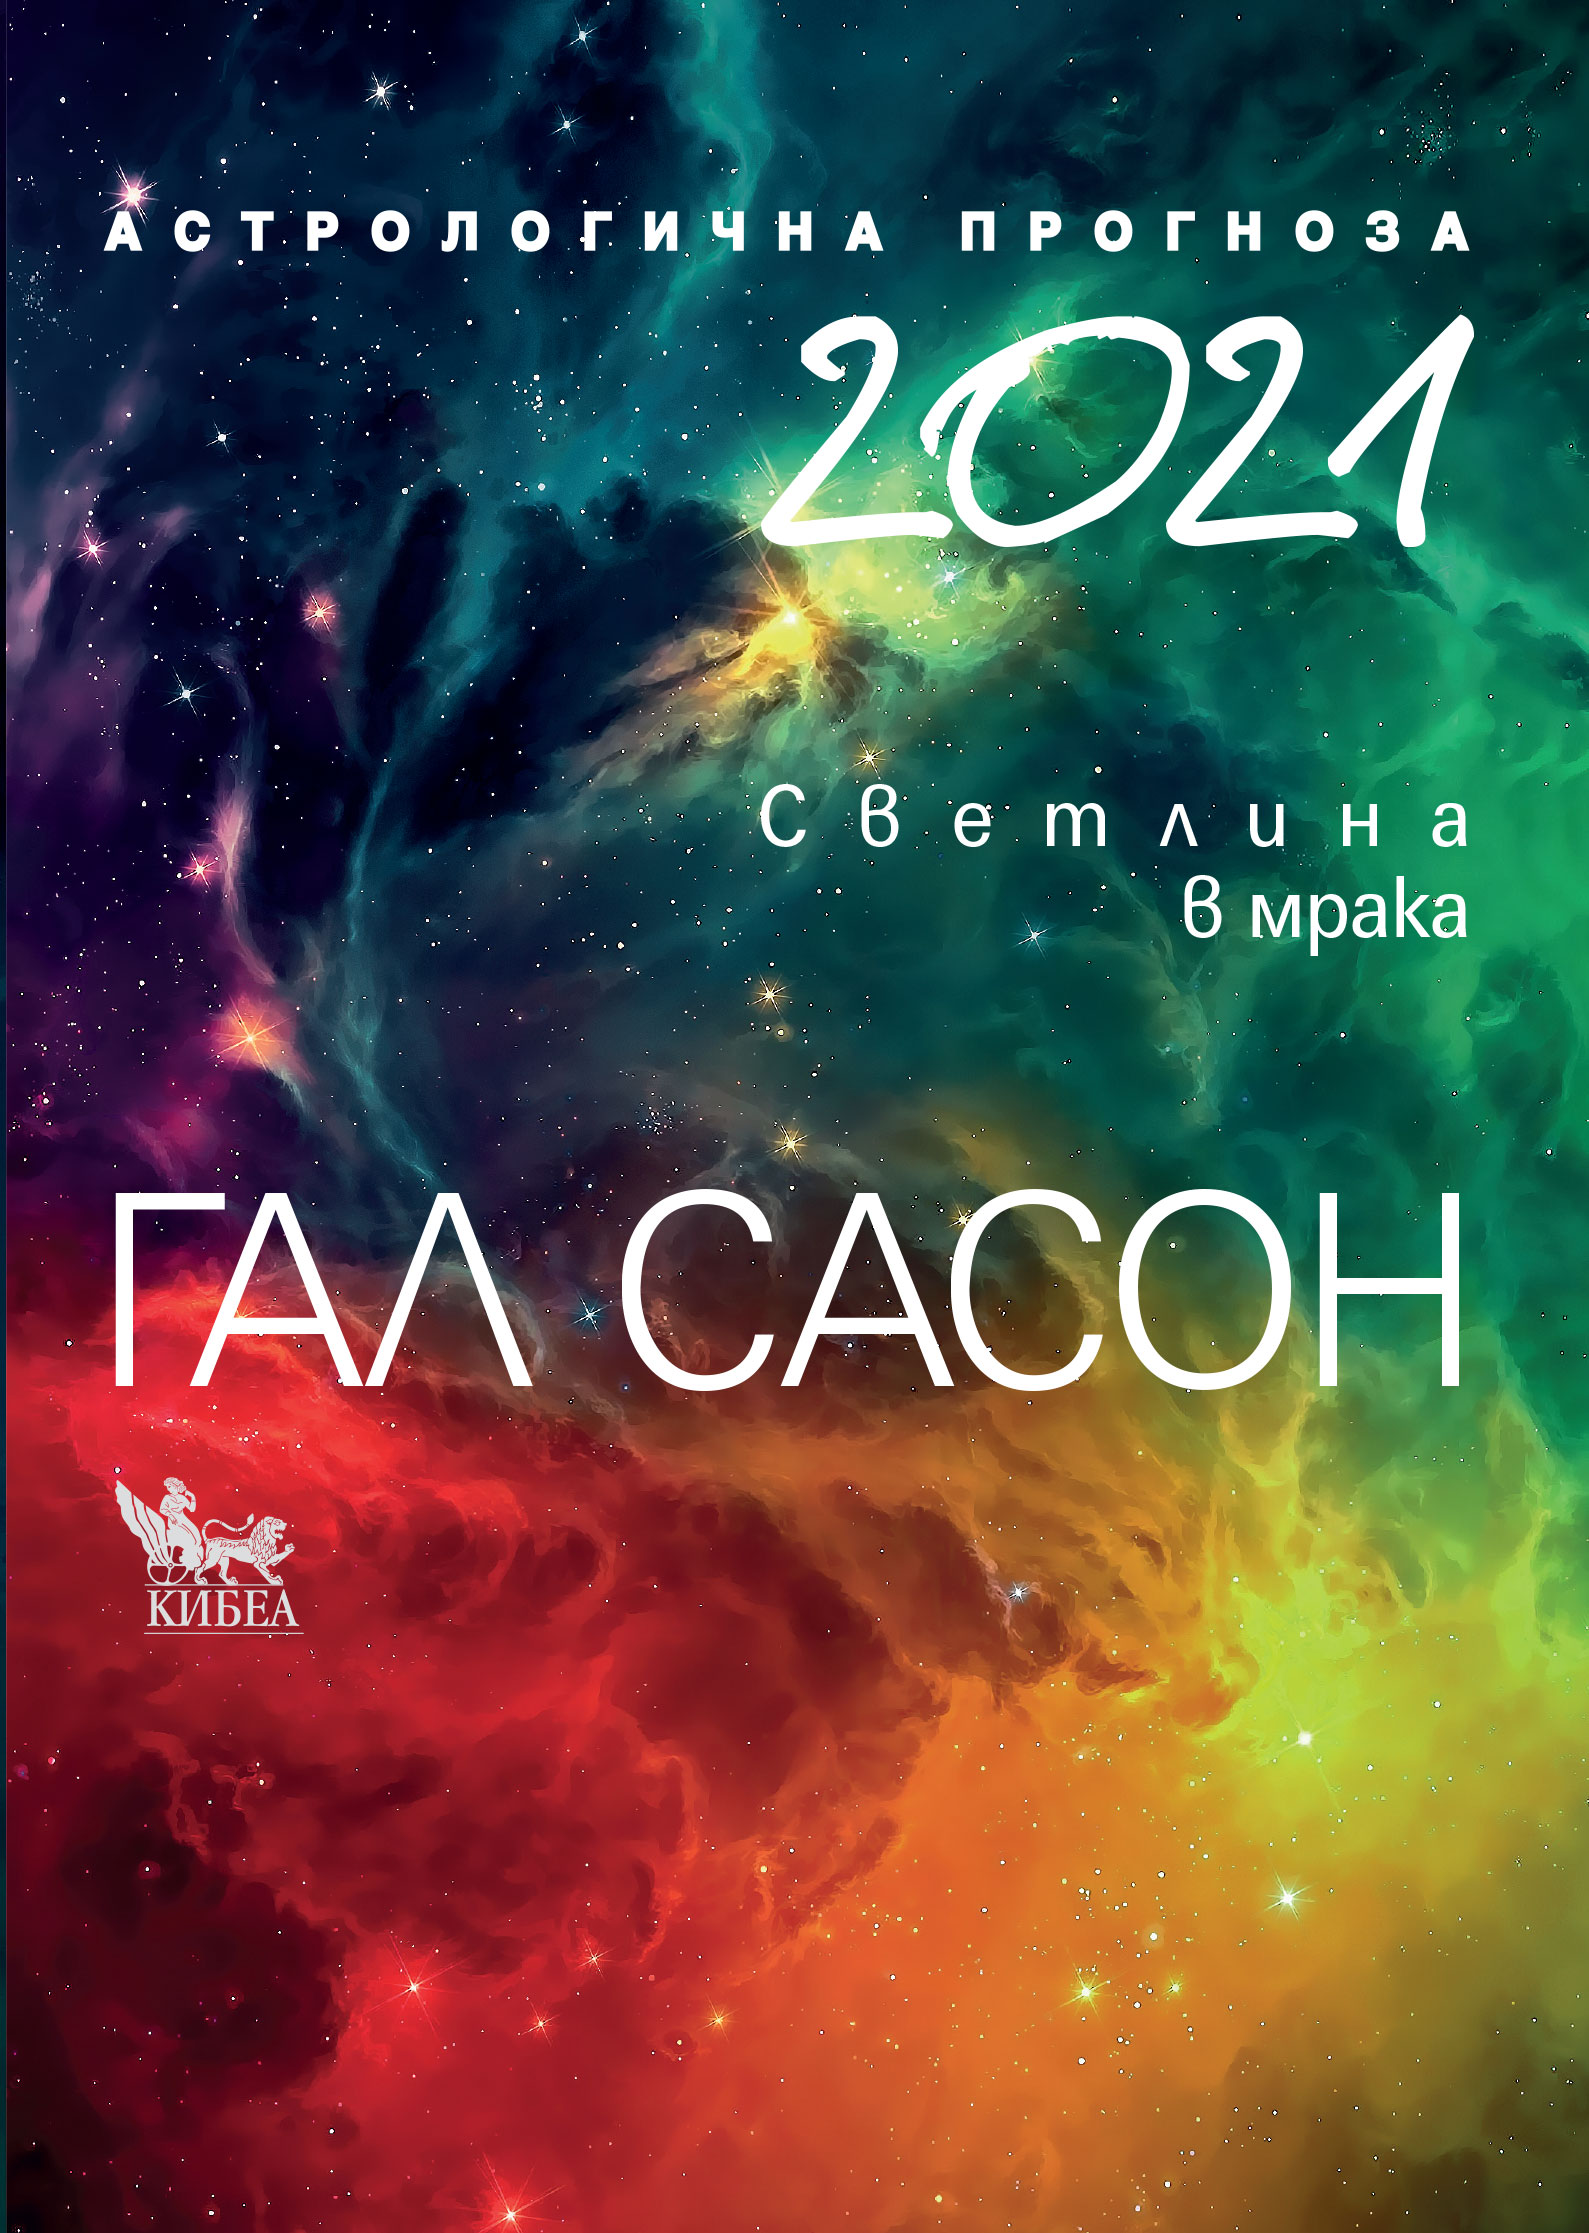 Гал Сасон: "2021. Астрологична прогноза. Светлина в мрака"